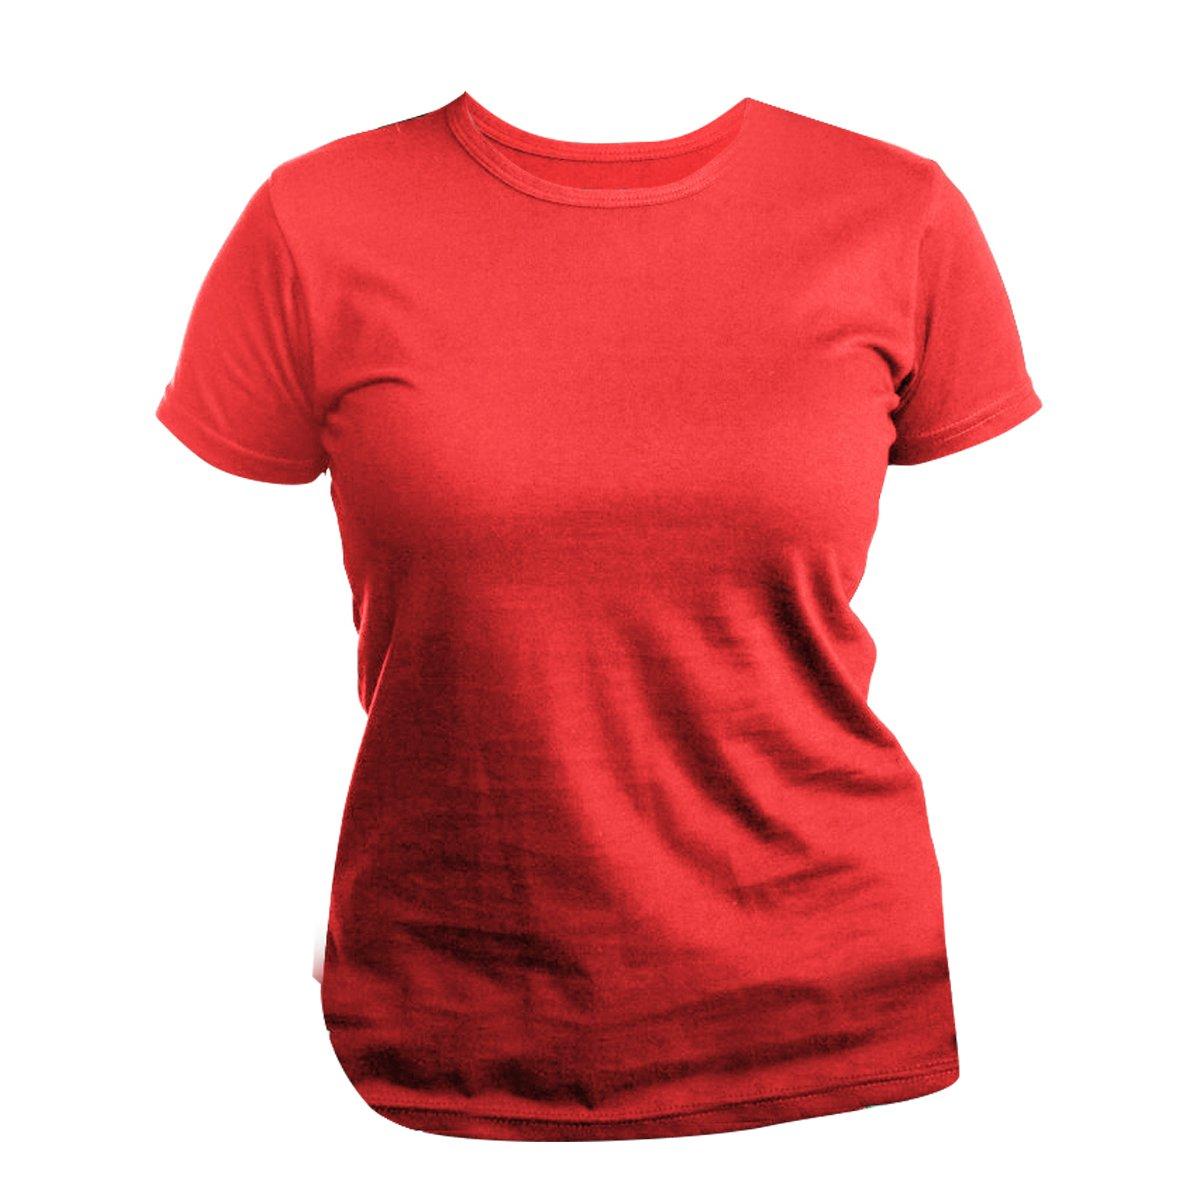 Tshirt, Slimfit, Kurzärmlig Damen Rot Bunt S von Universal Textiles